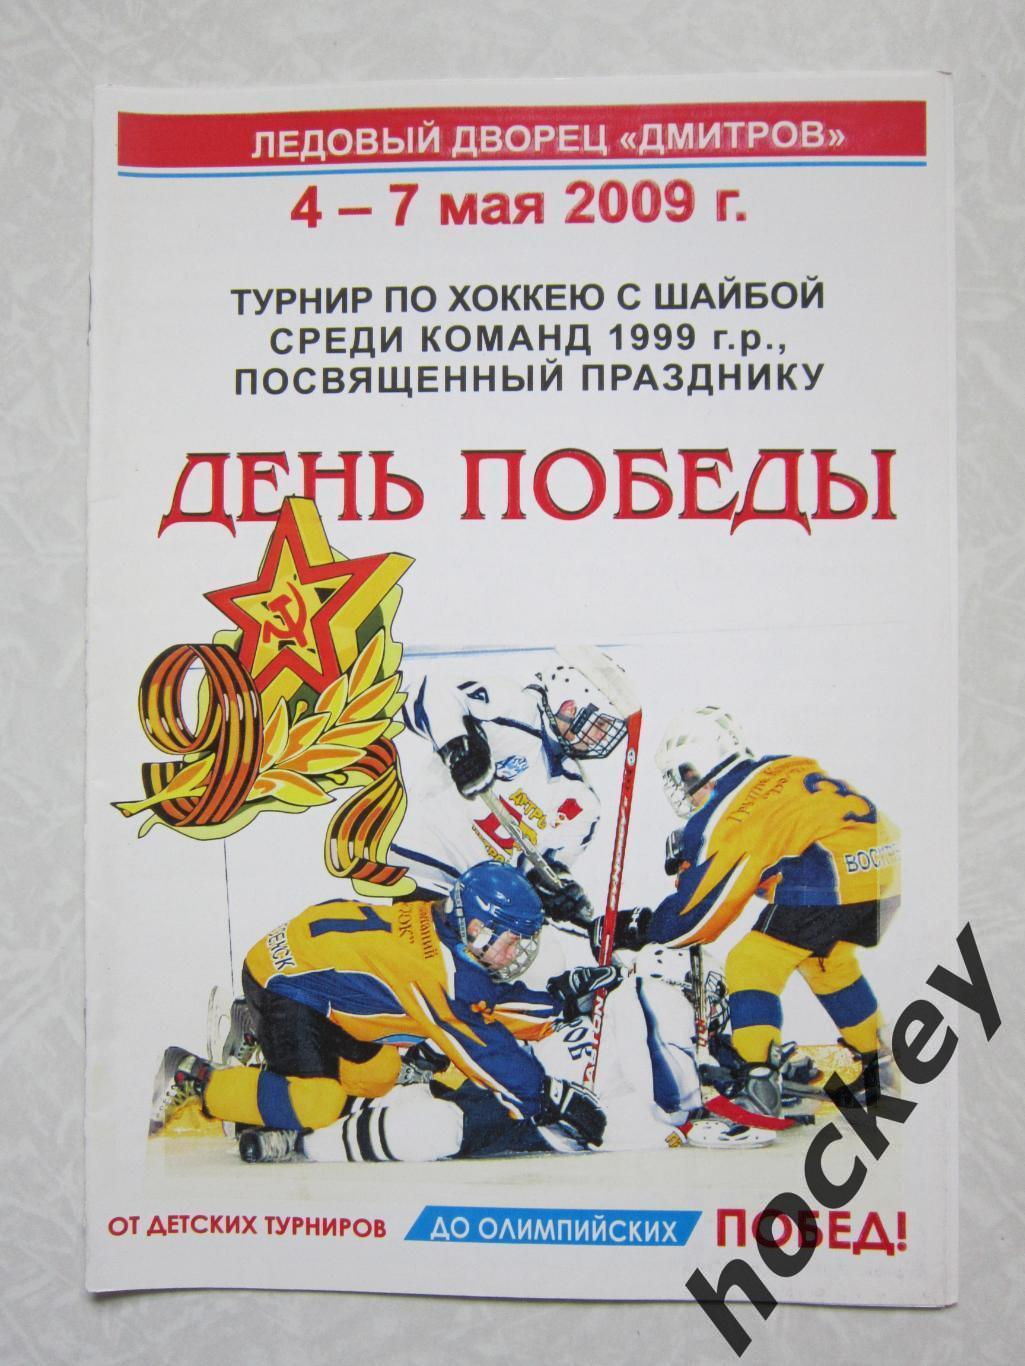 Турнир, посвященный Дню Победы (команды 1999 г.р.) Дмитров 4-7.05.2009